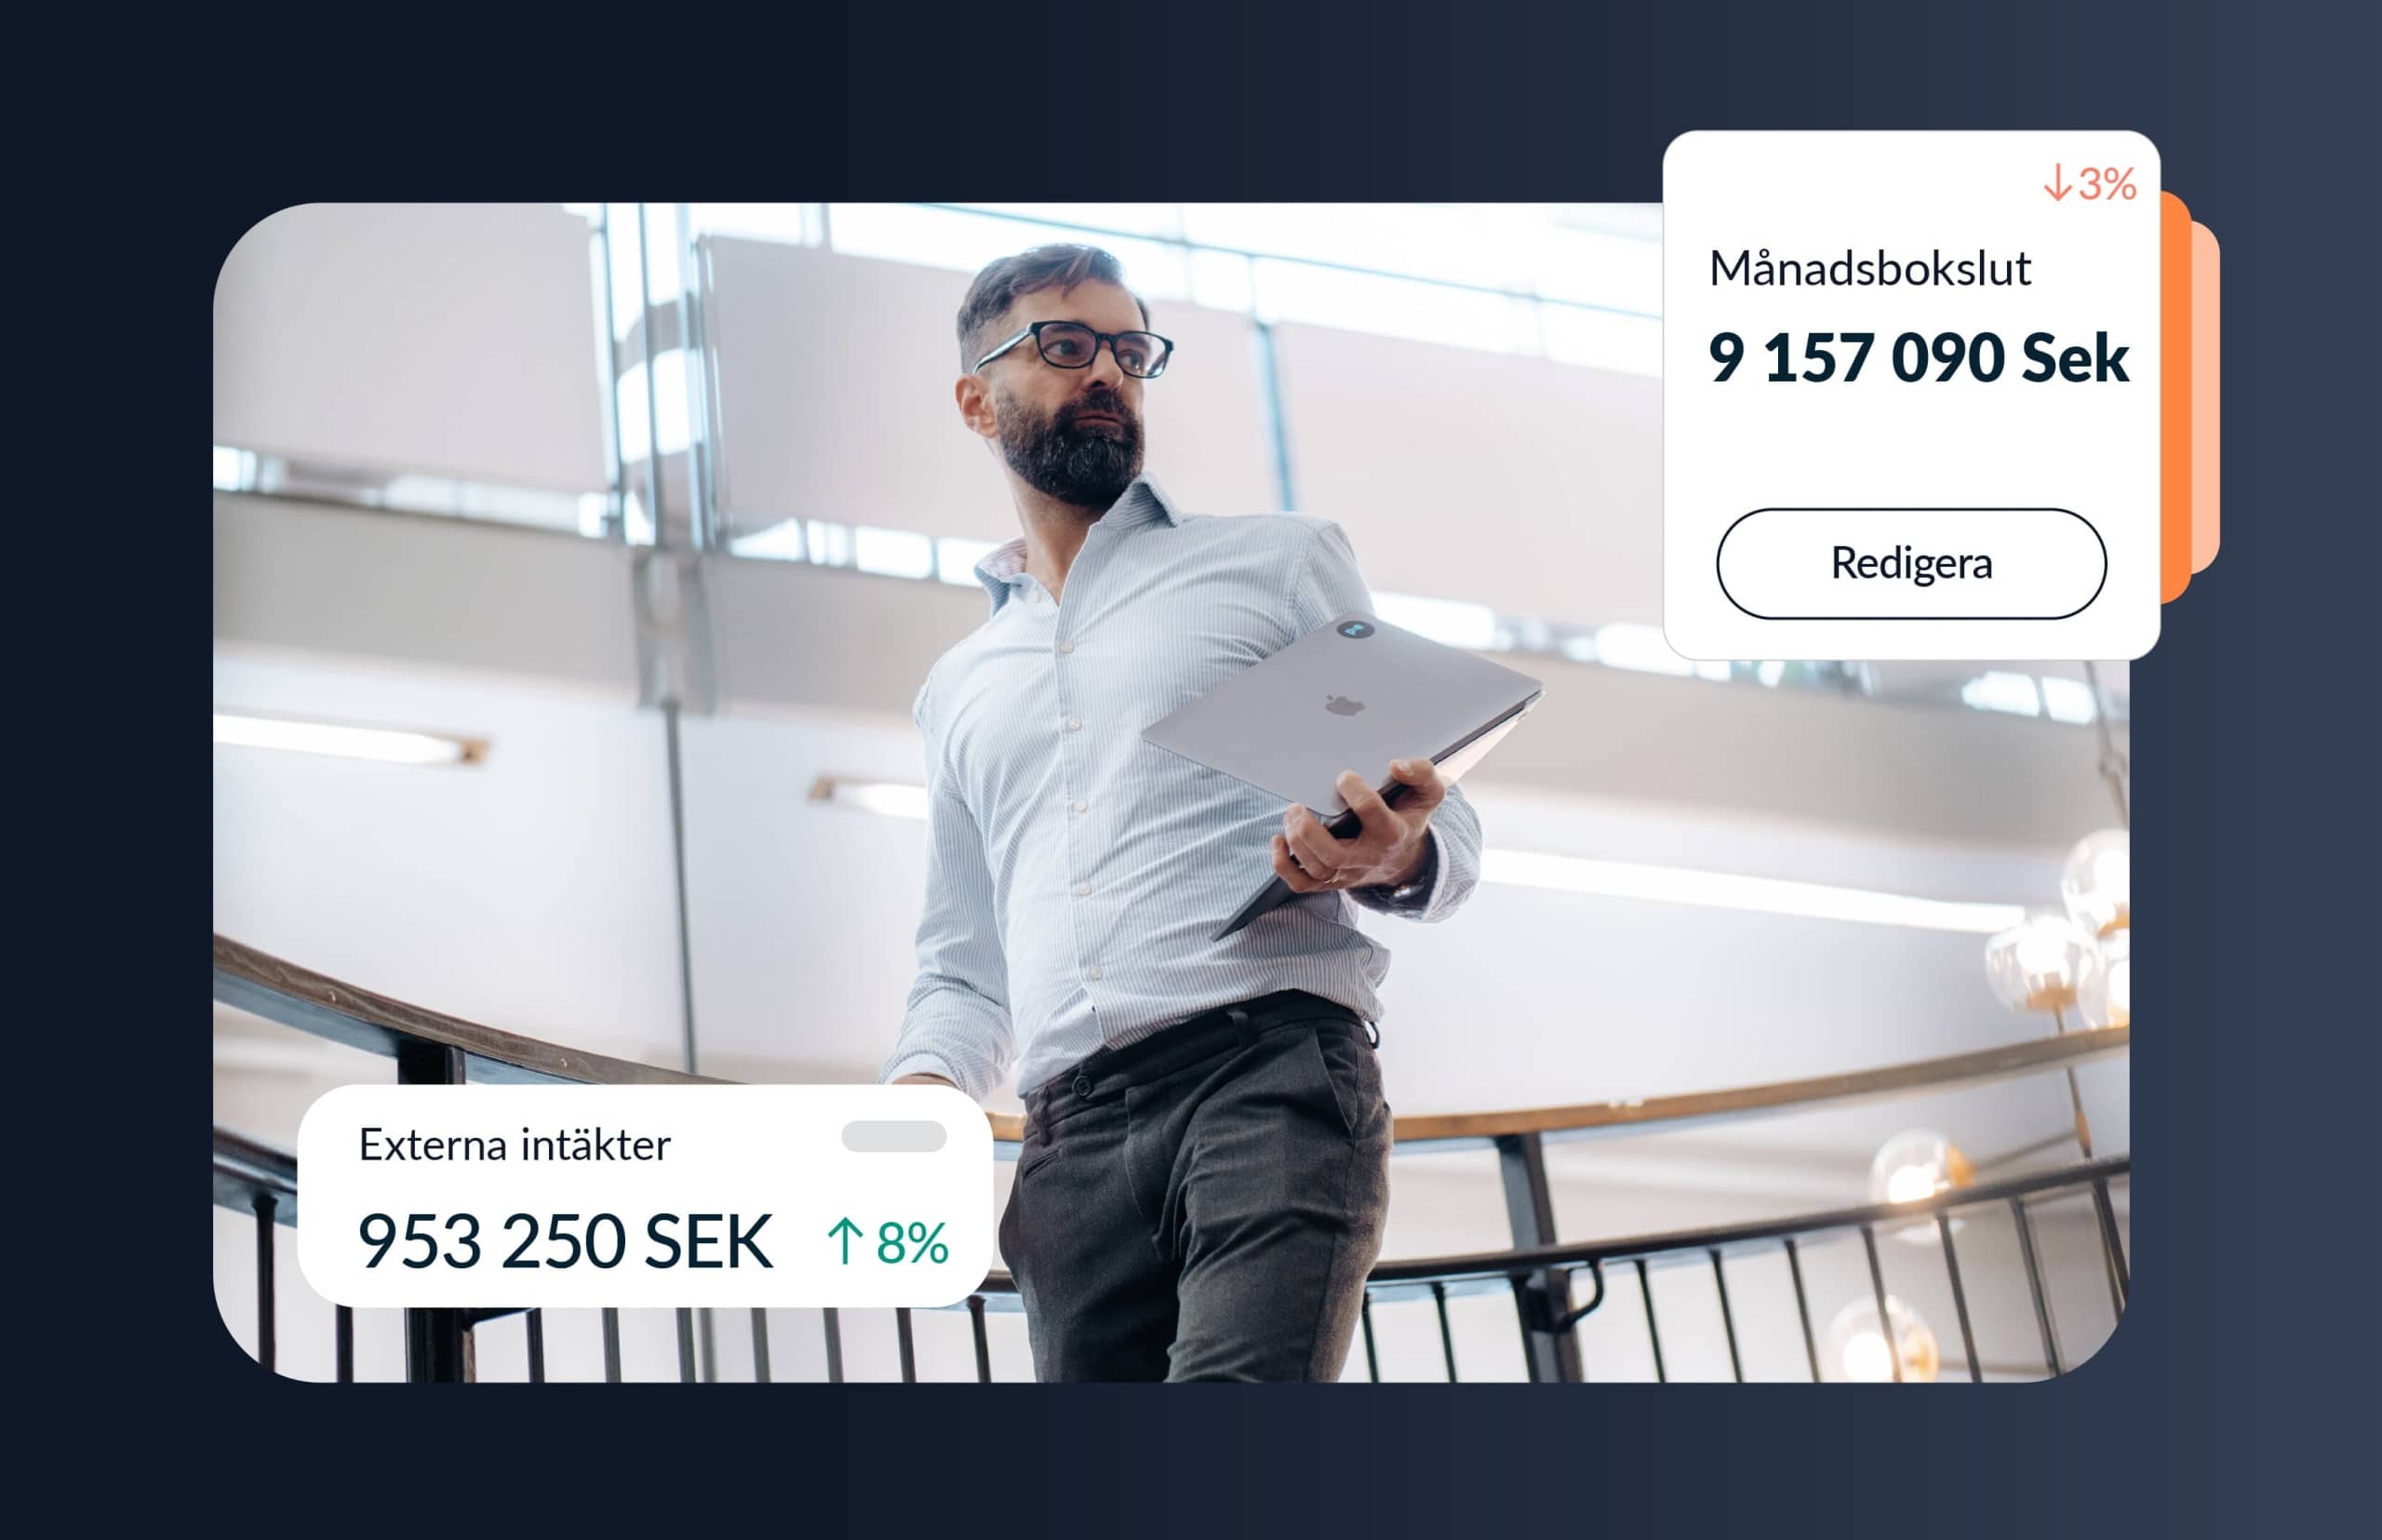 Affärsman från PE Accounting i modern kontorsmiljö bär en dator, framför en digital display med siffror från månadsbokslut som visar 9 157 090 SEK, en minskning med 3%, och externa intäkter på 953 250 SEK, en ökning med 8%.